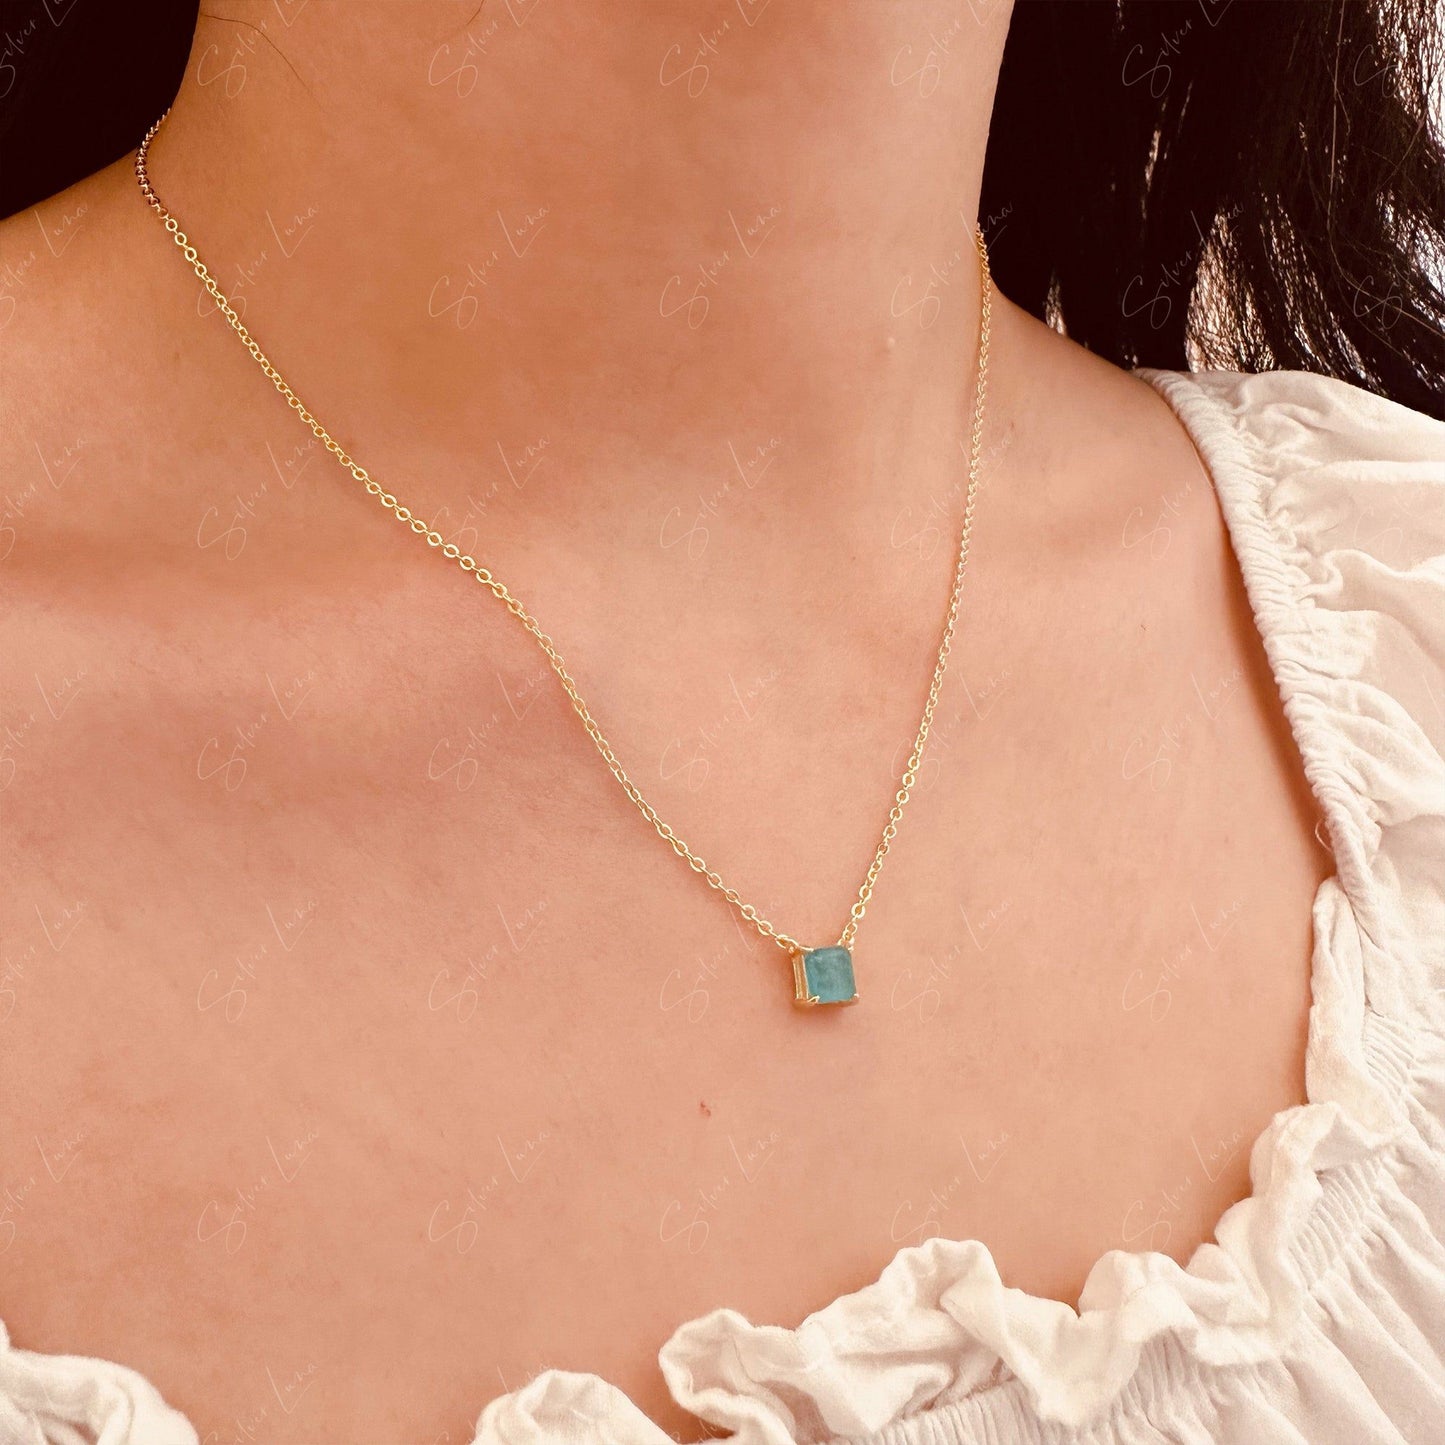 Simple tourmaline pendant necklace